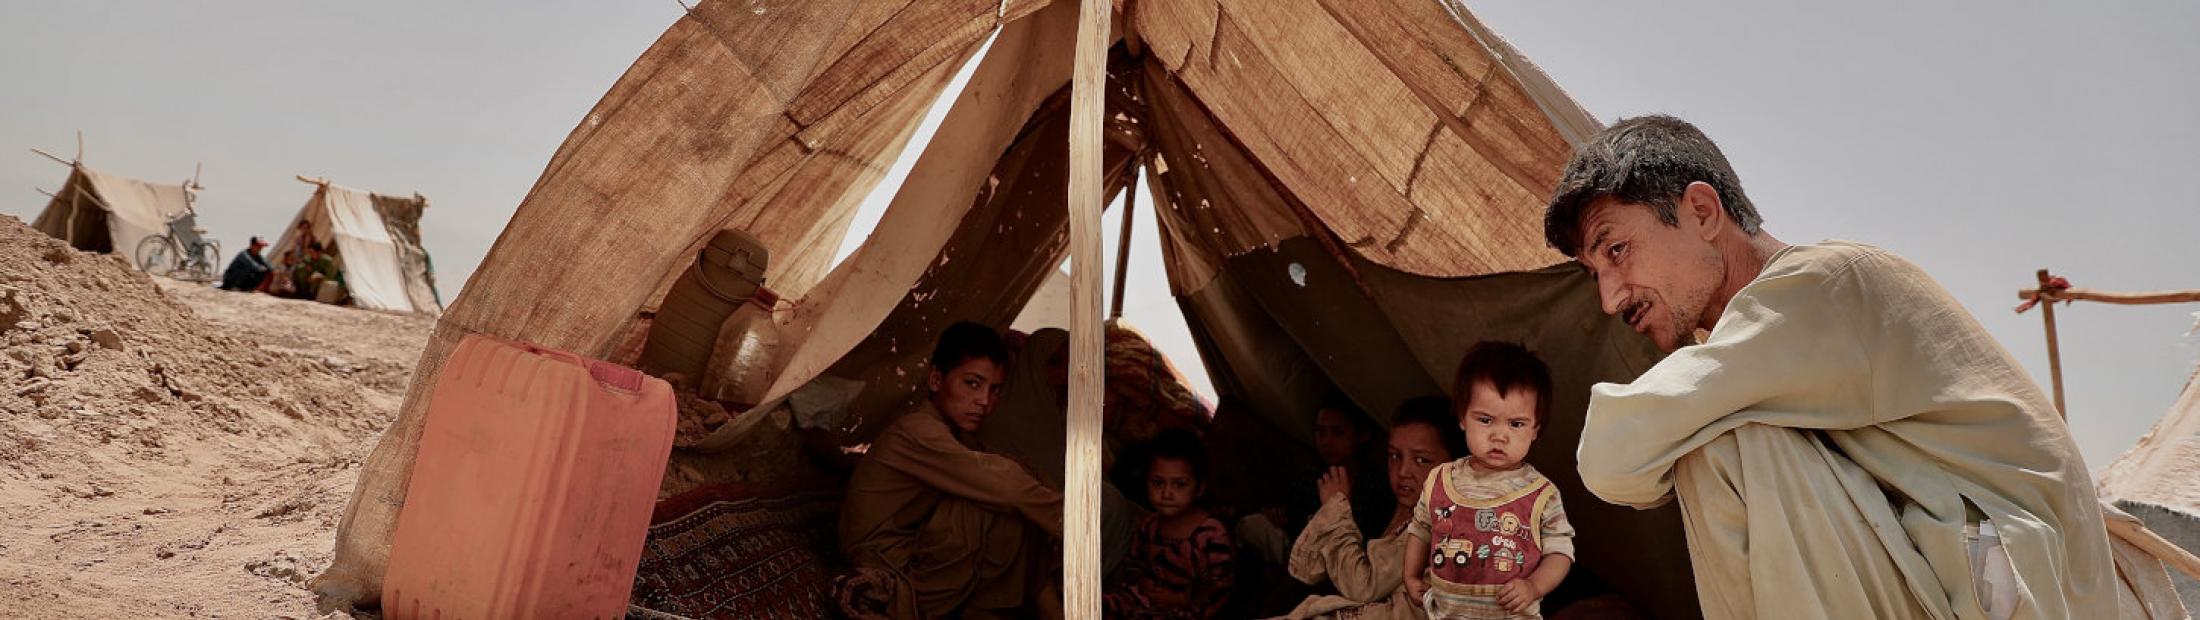 Afganistán: un futuro incierto para millones de personas